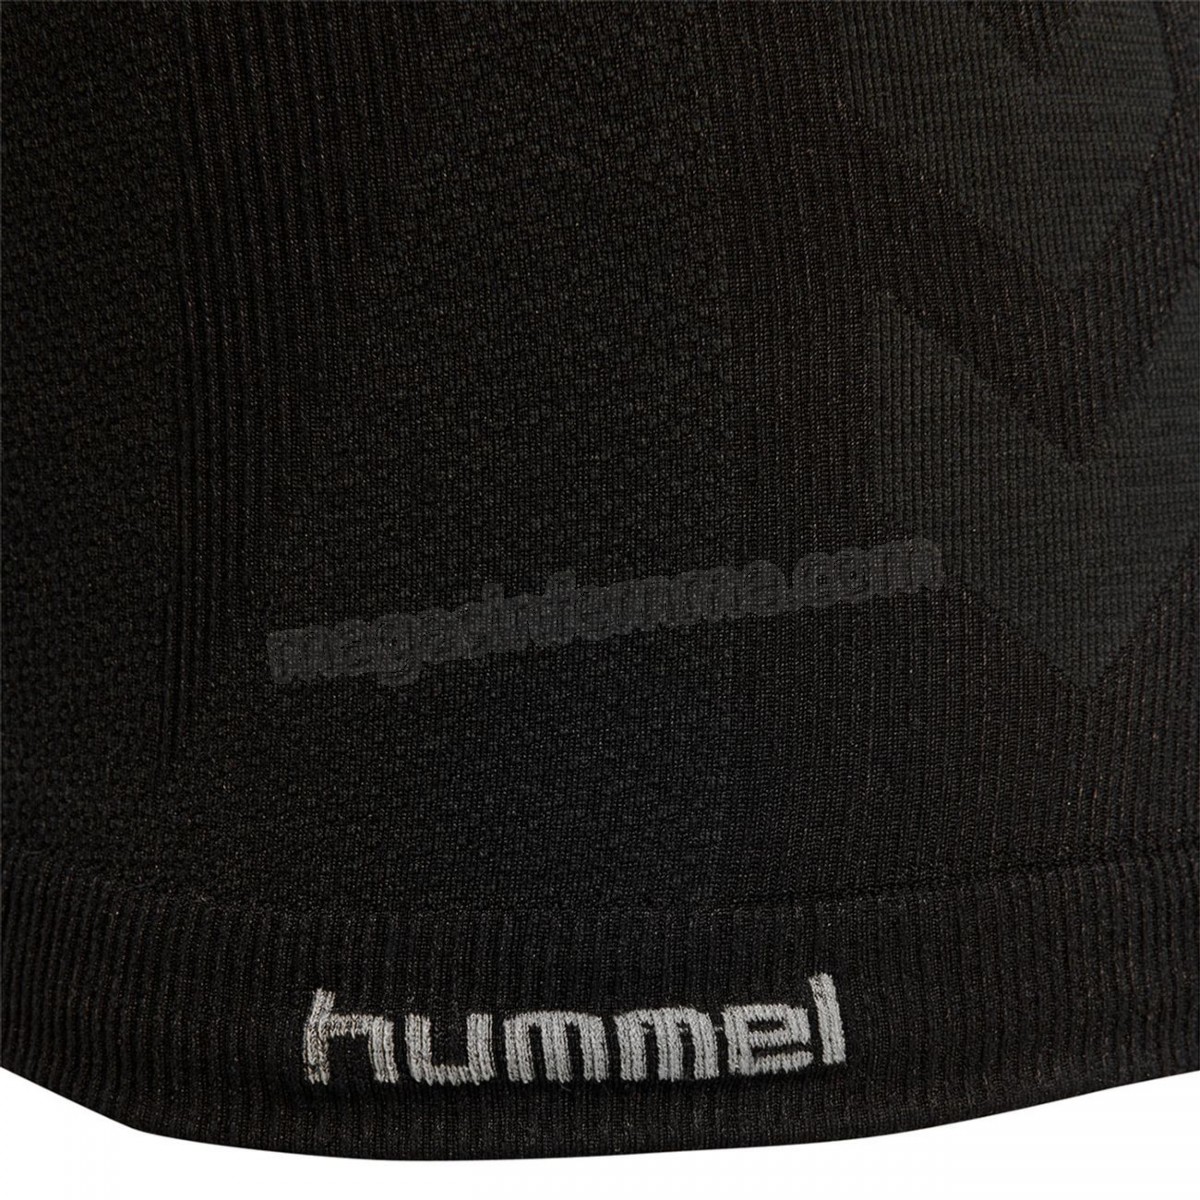 Hummel-Mode- Lifestyle femme HUMMEL T-shirt femme Hummel clea seamless top en solde - -5